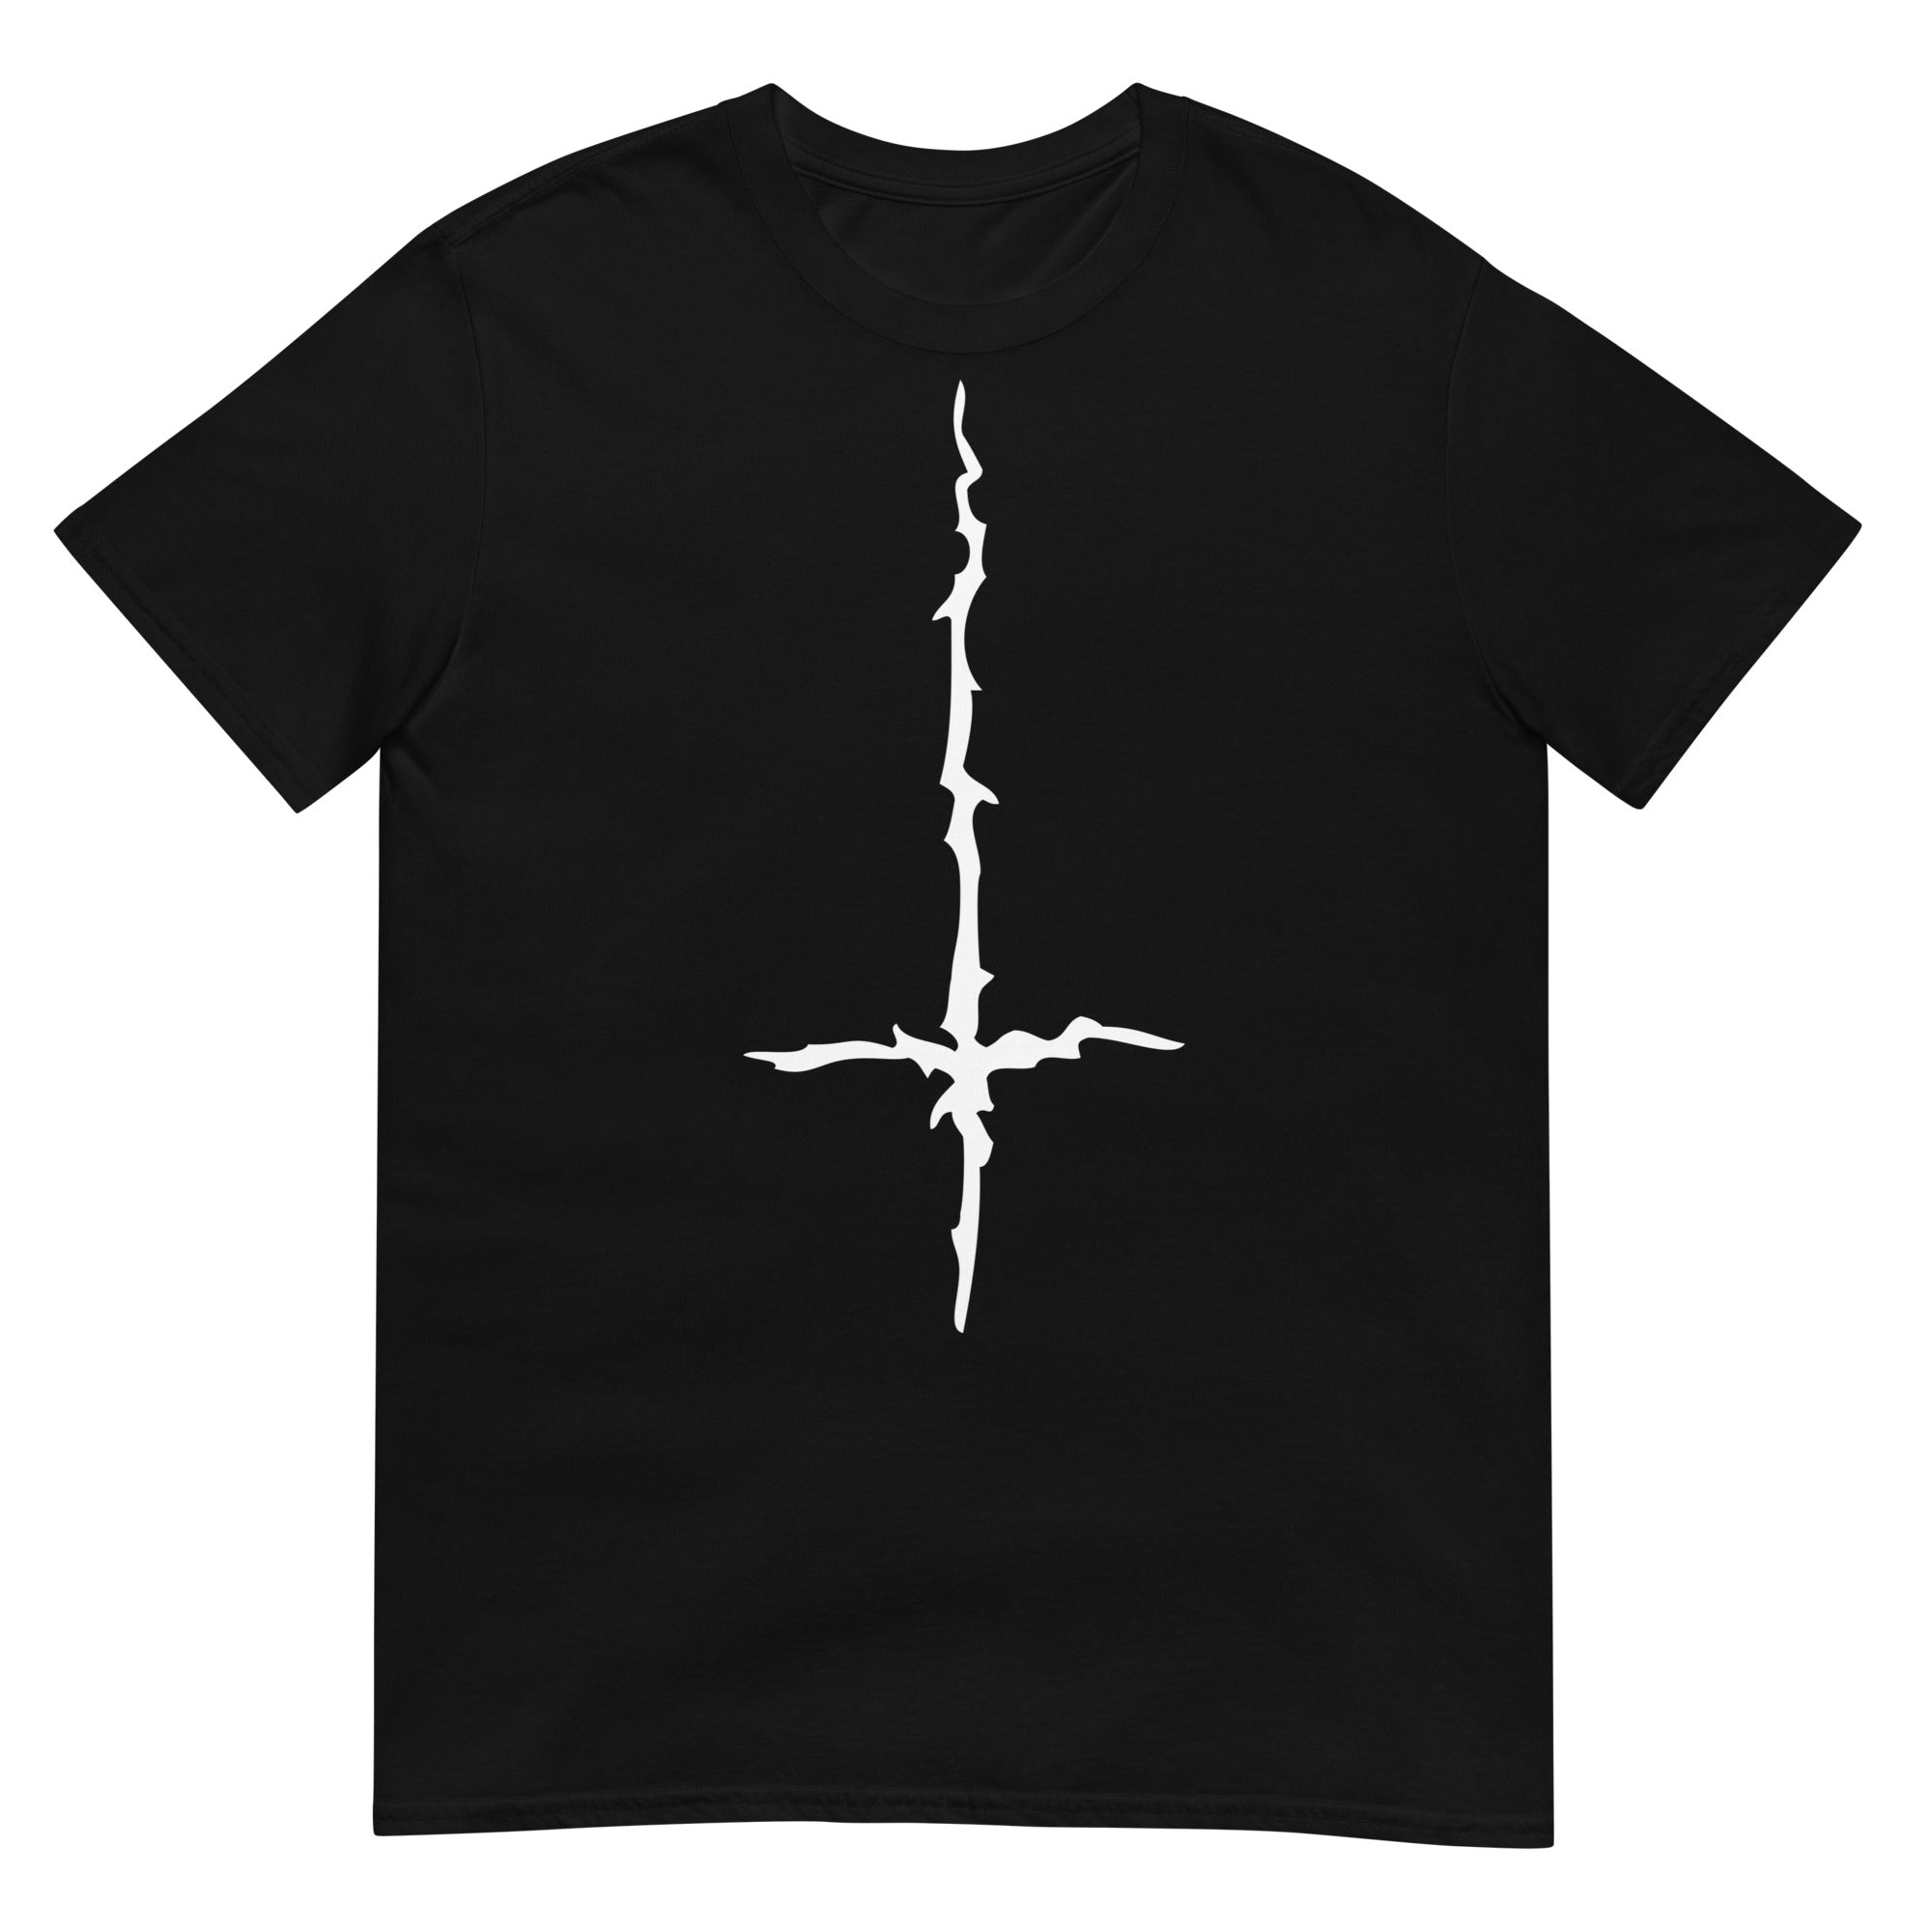 White Melting Inverted Cross Black Metal Style Men's Short-Sleeve T-Shirt